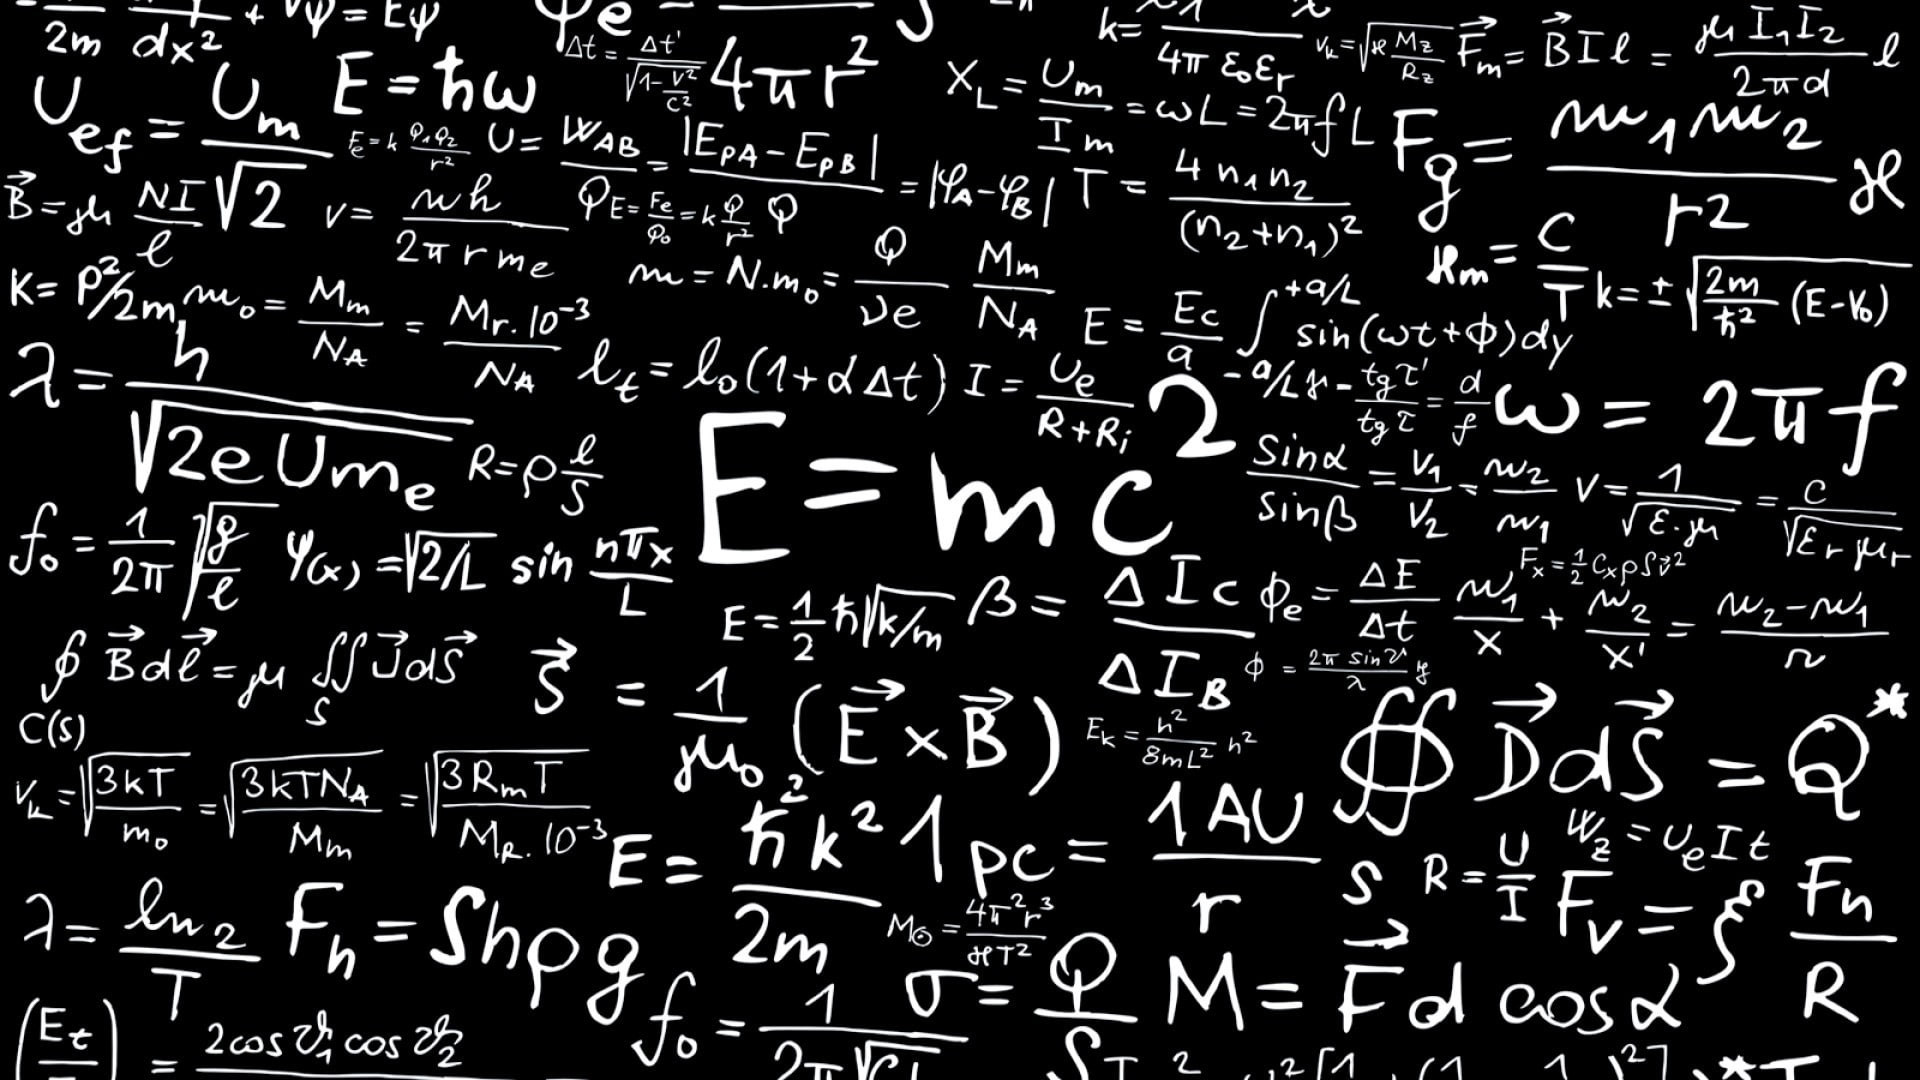 Albert Einstein, Formula, mathematics, physics, science, Special Relativity